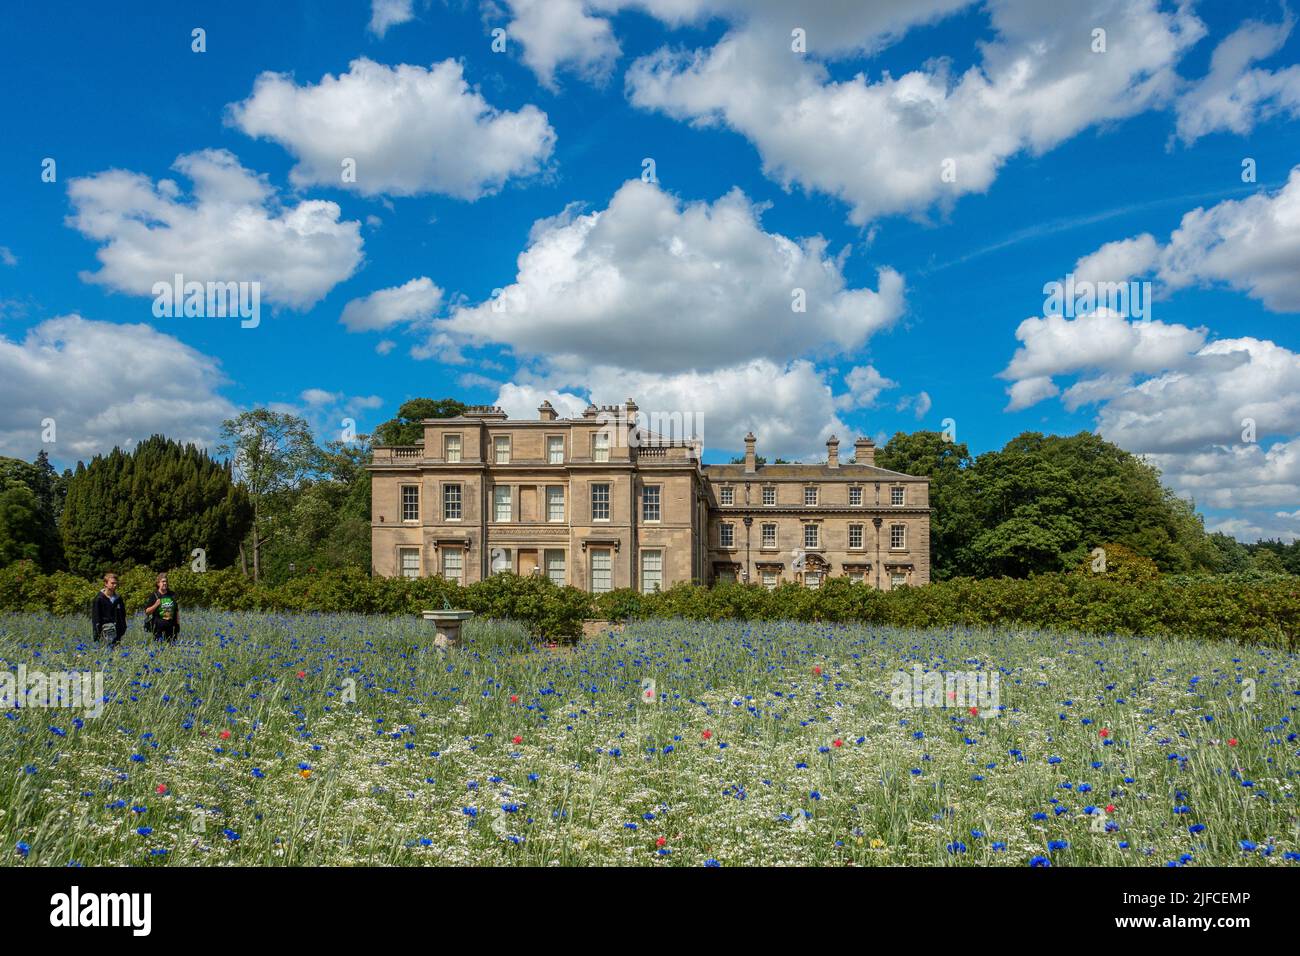 Normanby Hall,Normanby,North Lincolnshire,England champ de fleurs de maïs bleues entourant un cadran solaire. Banque D'Images